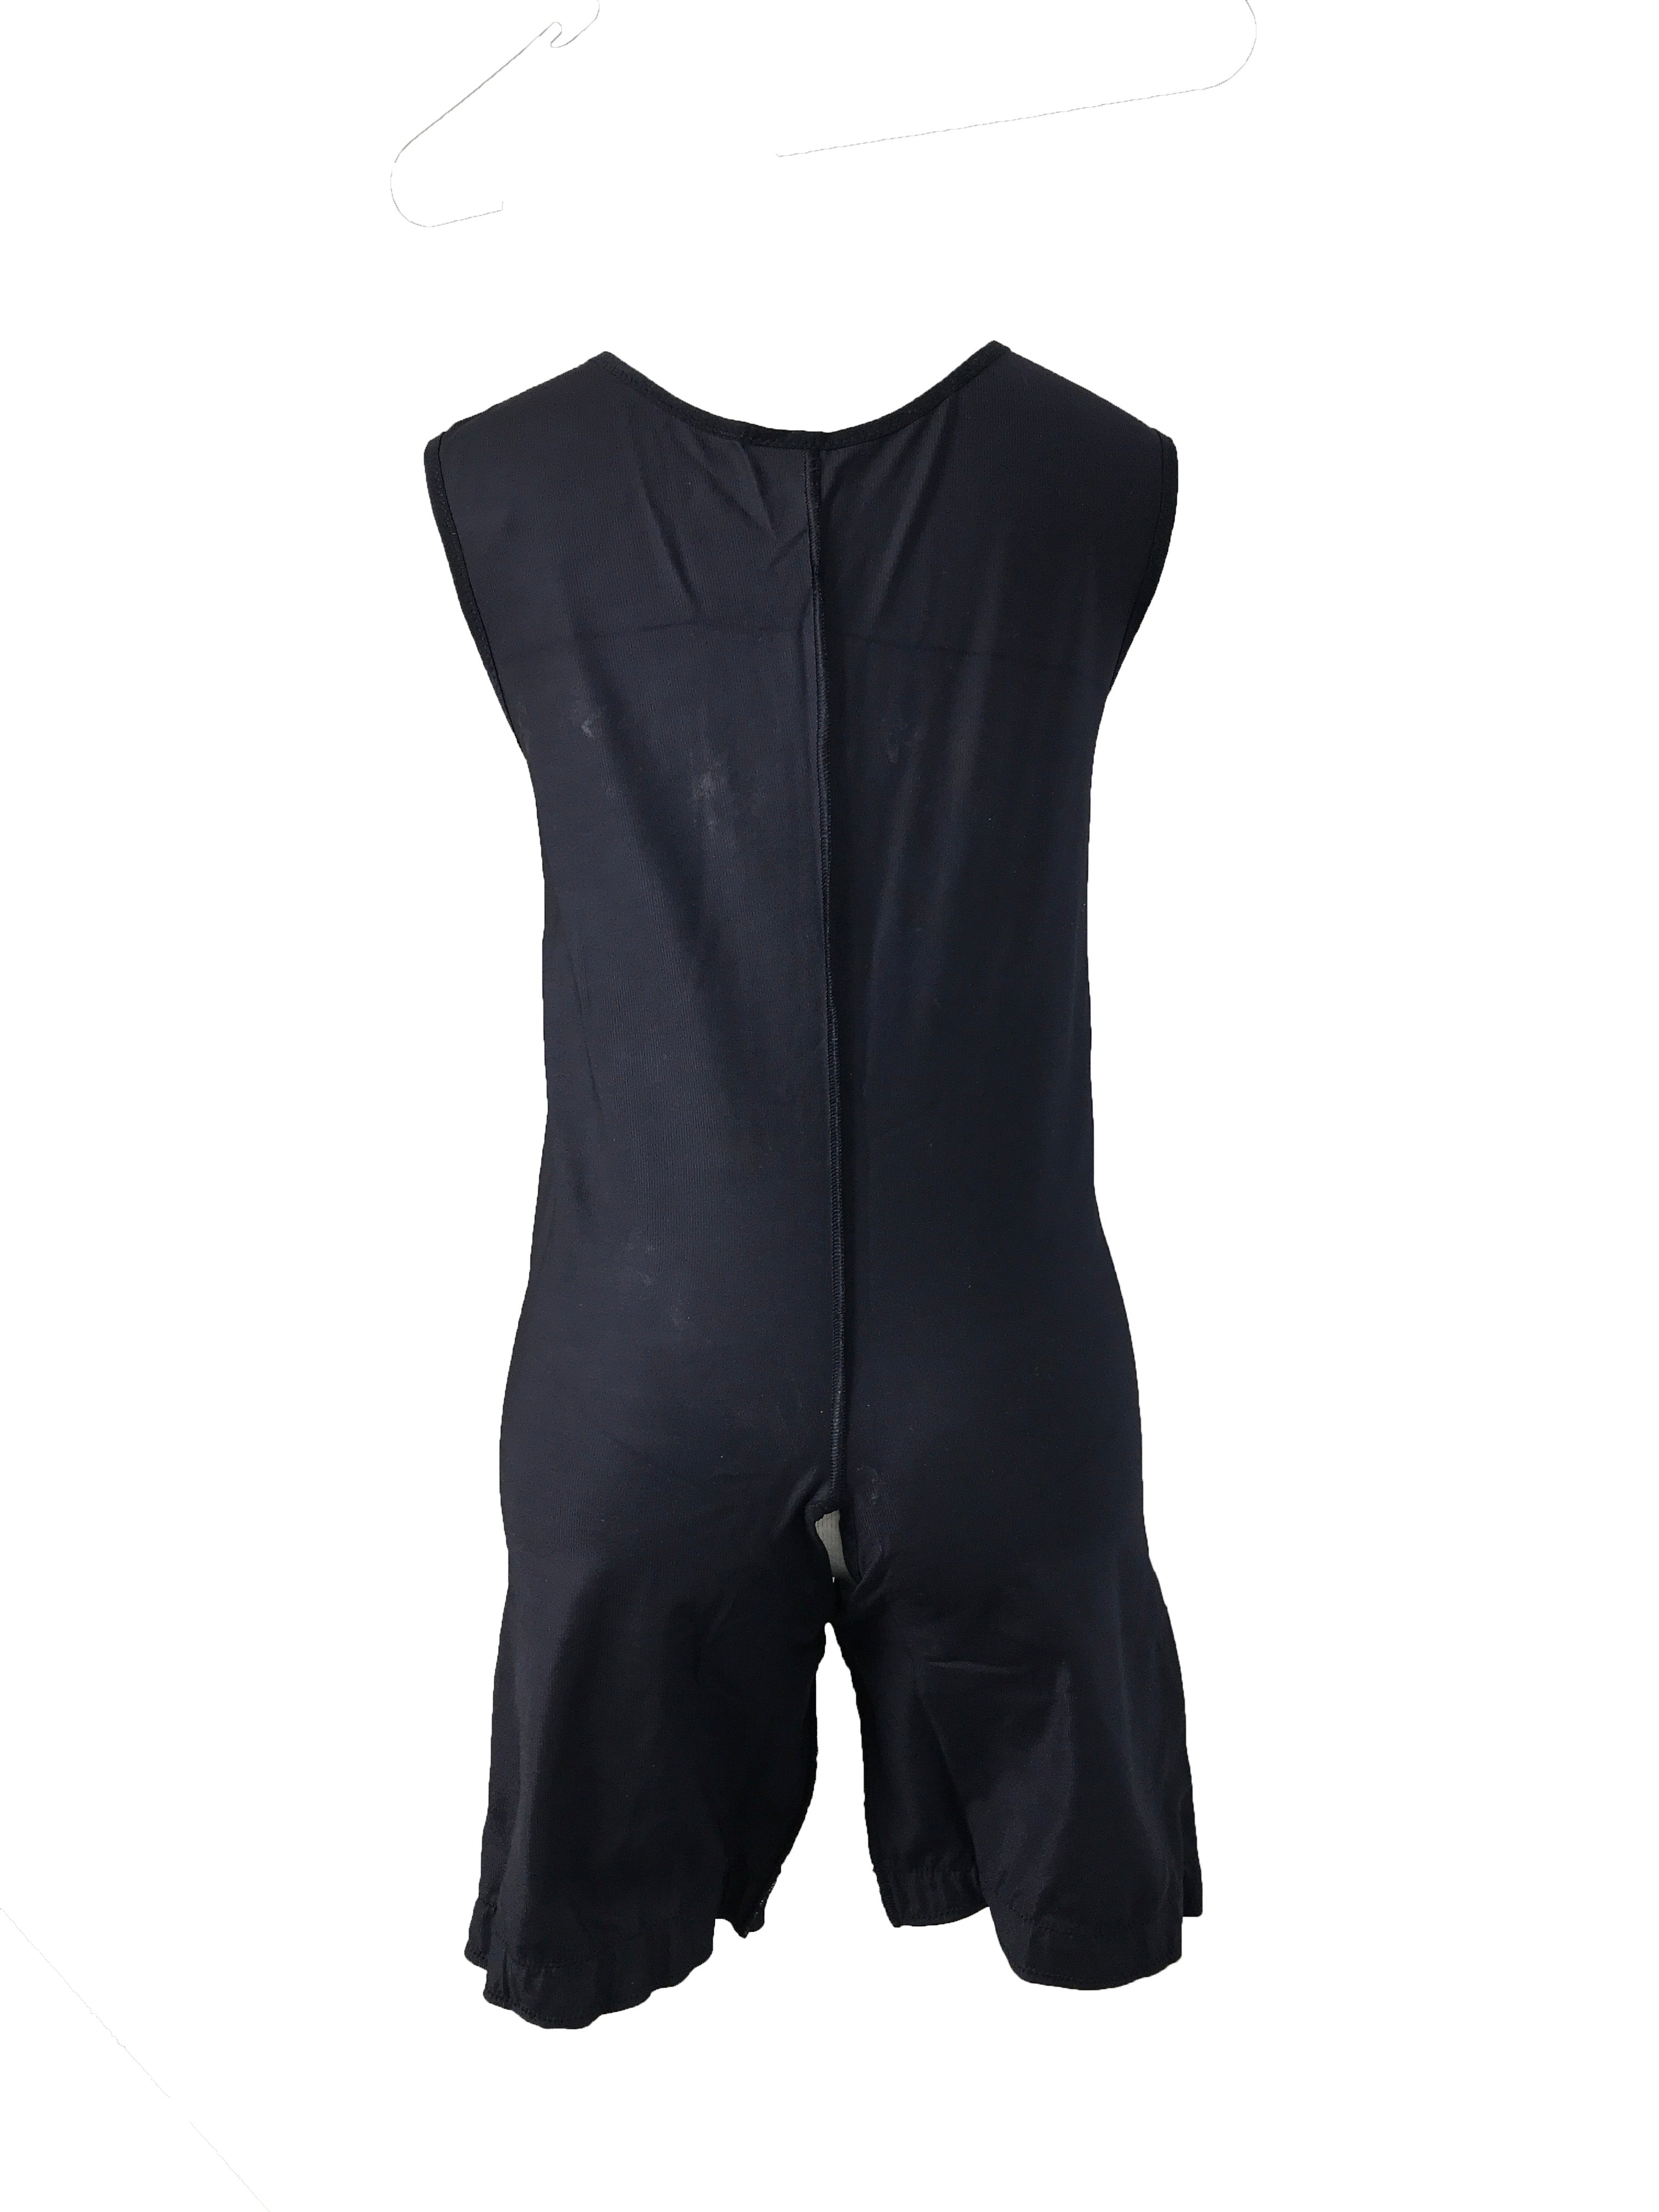 Marena ComfortWear Compression and Support Garment Black Bodysuit Men's Size L